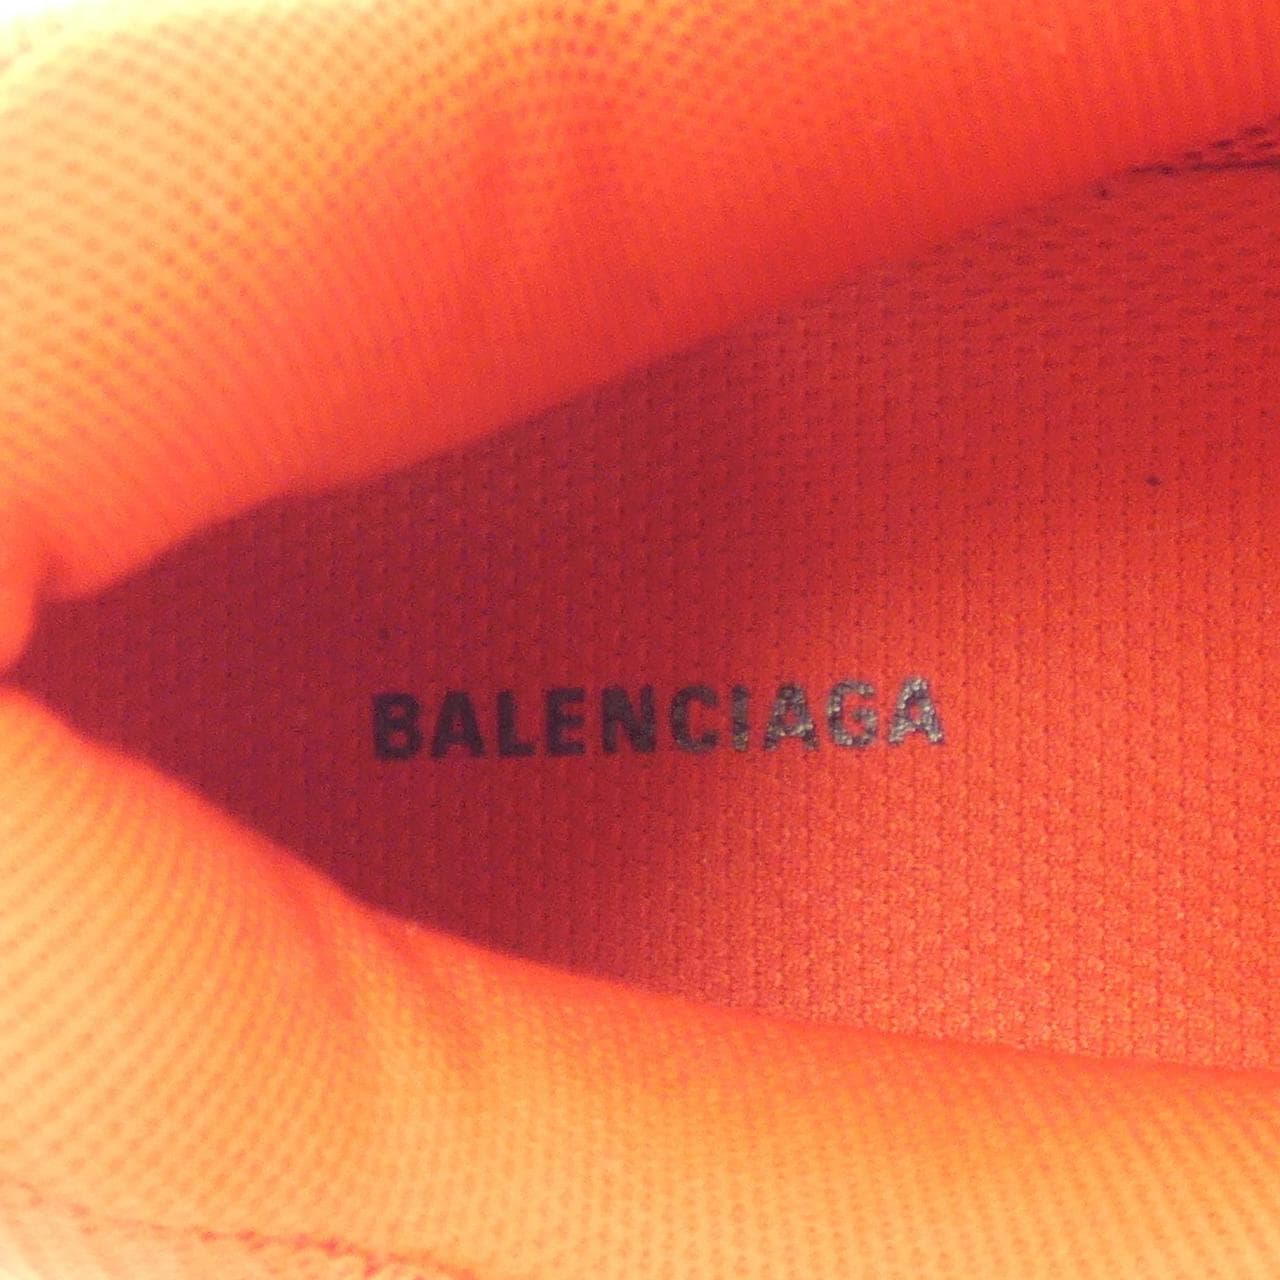 THE BALENCIAGA BALENCIAGA SNEAKERS